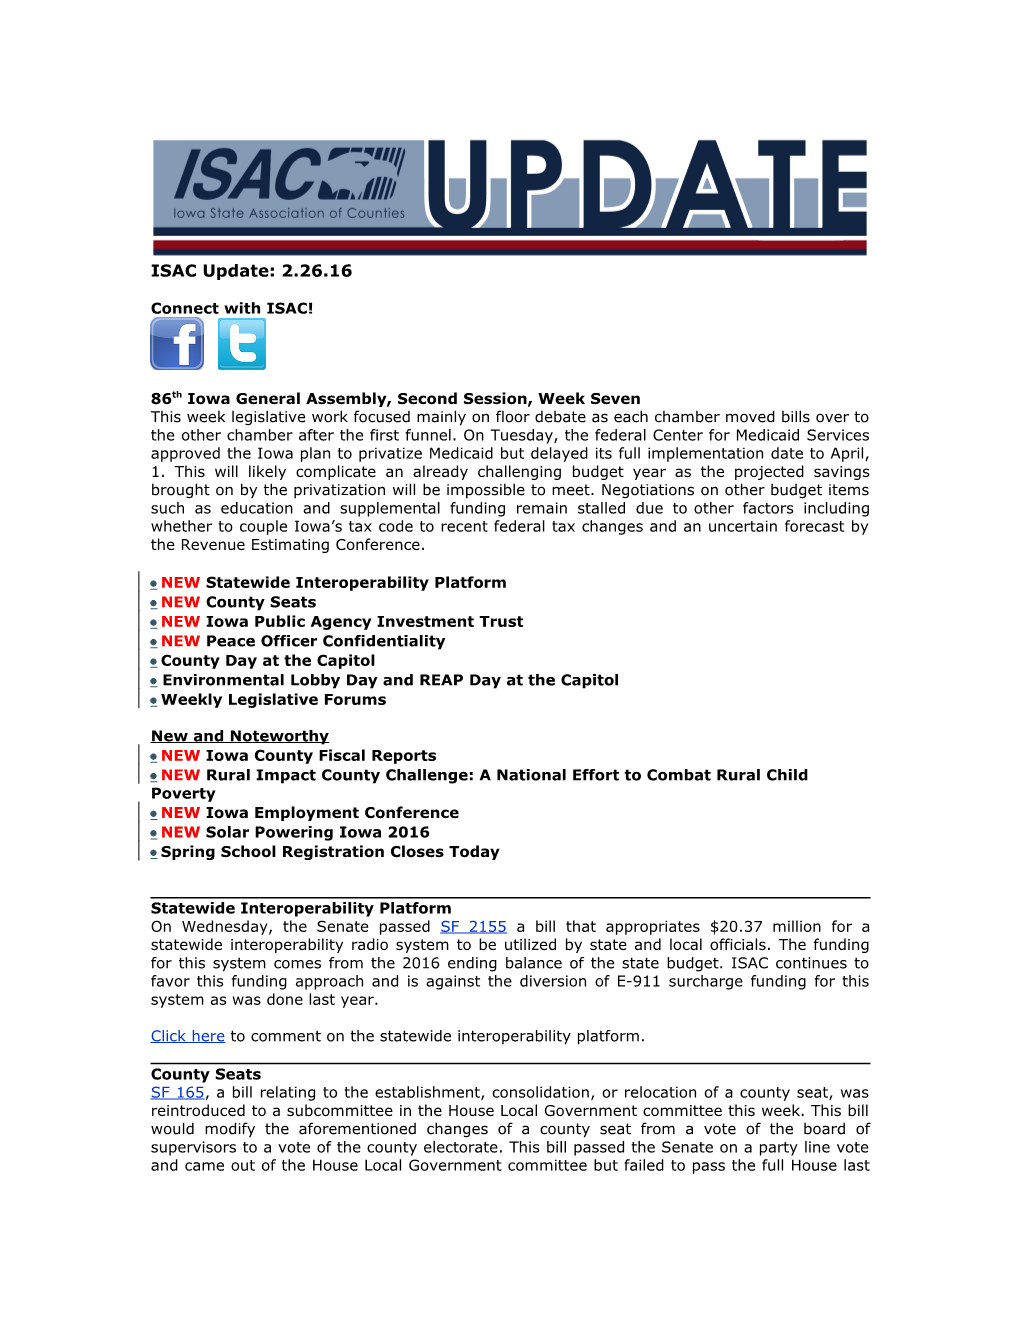 ISAC Legislative Update s1